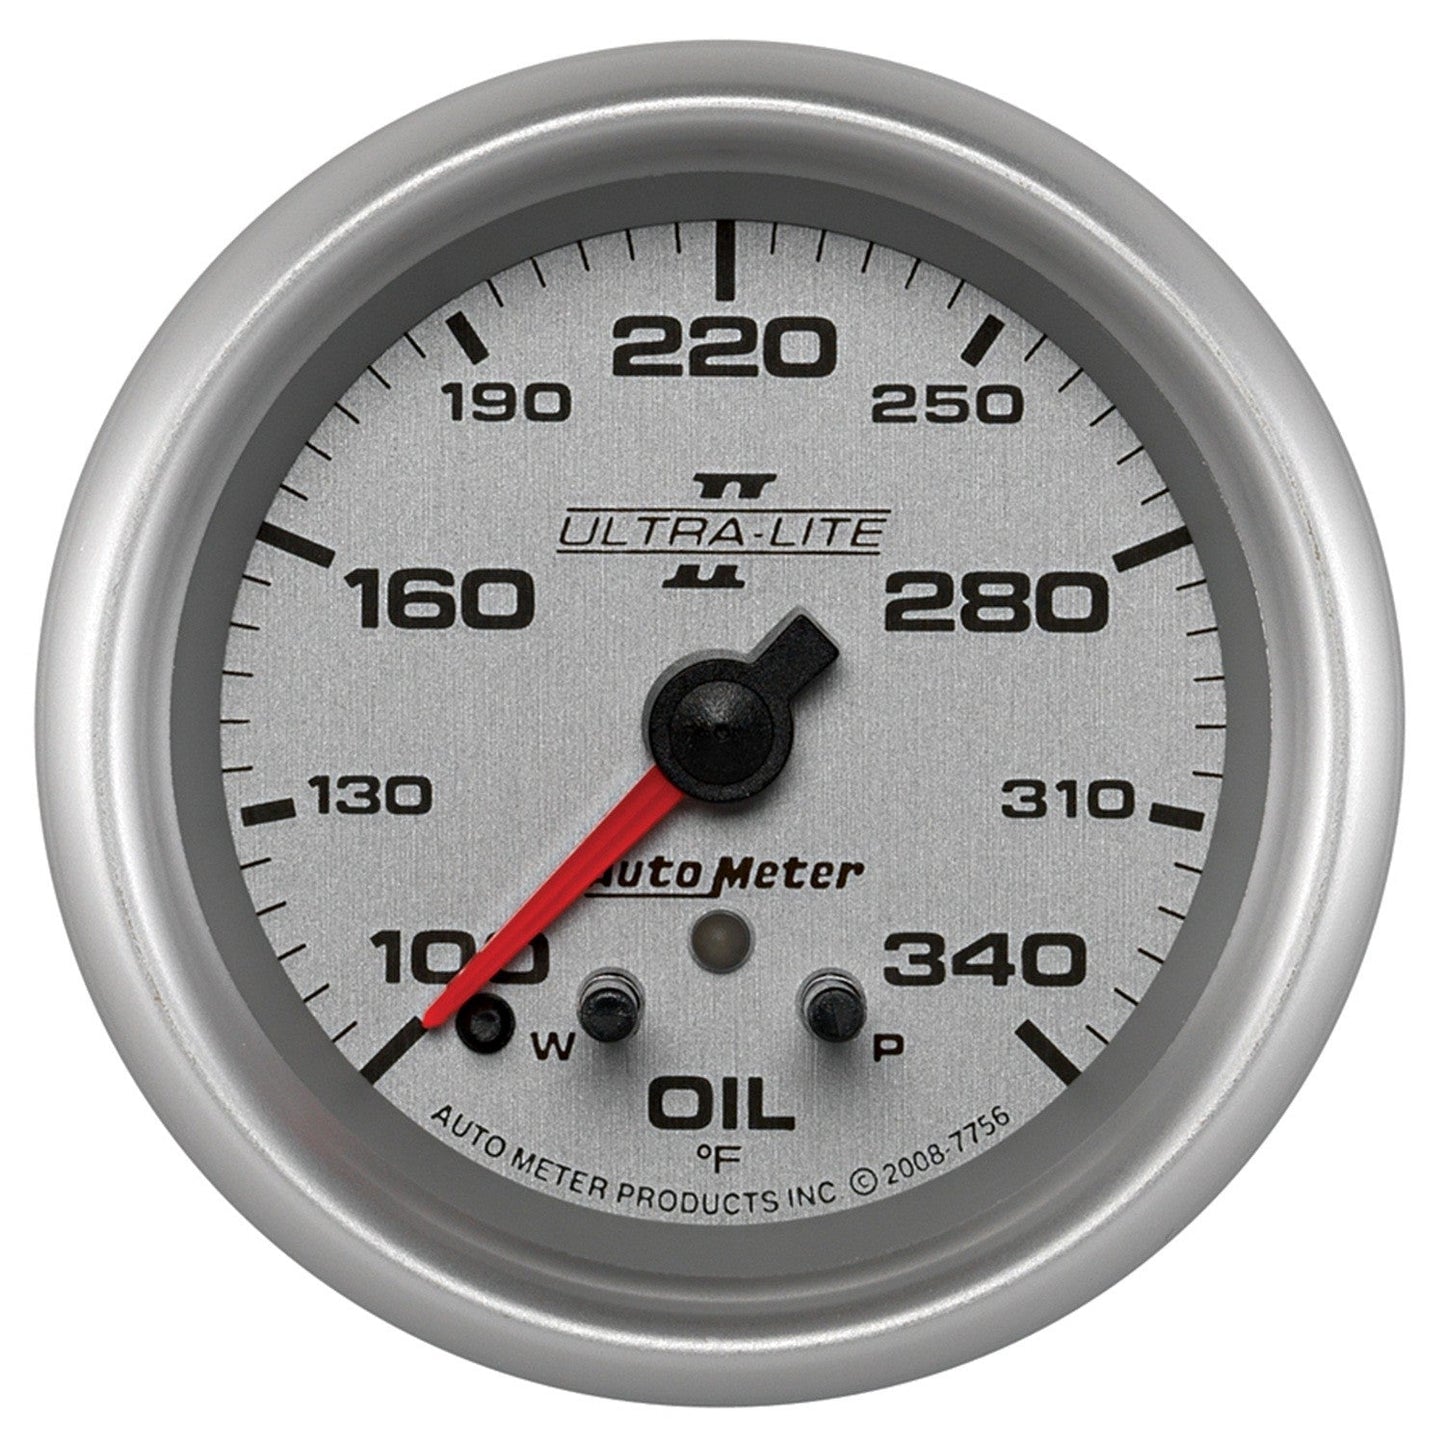 AutoMeter - 2-5/8" OIL TEMPERATURE, W/ PEAK & WARN, 100-340 °F, STEPPER MOTOR, ULTRA-LITE II (7756)